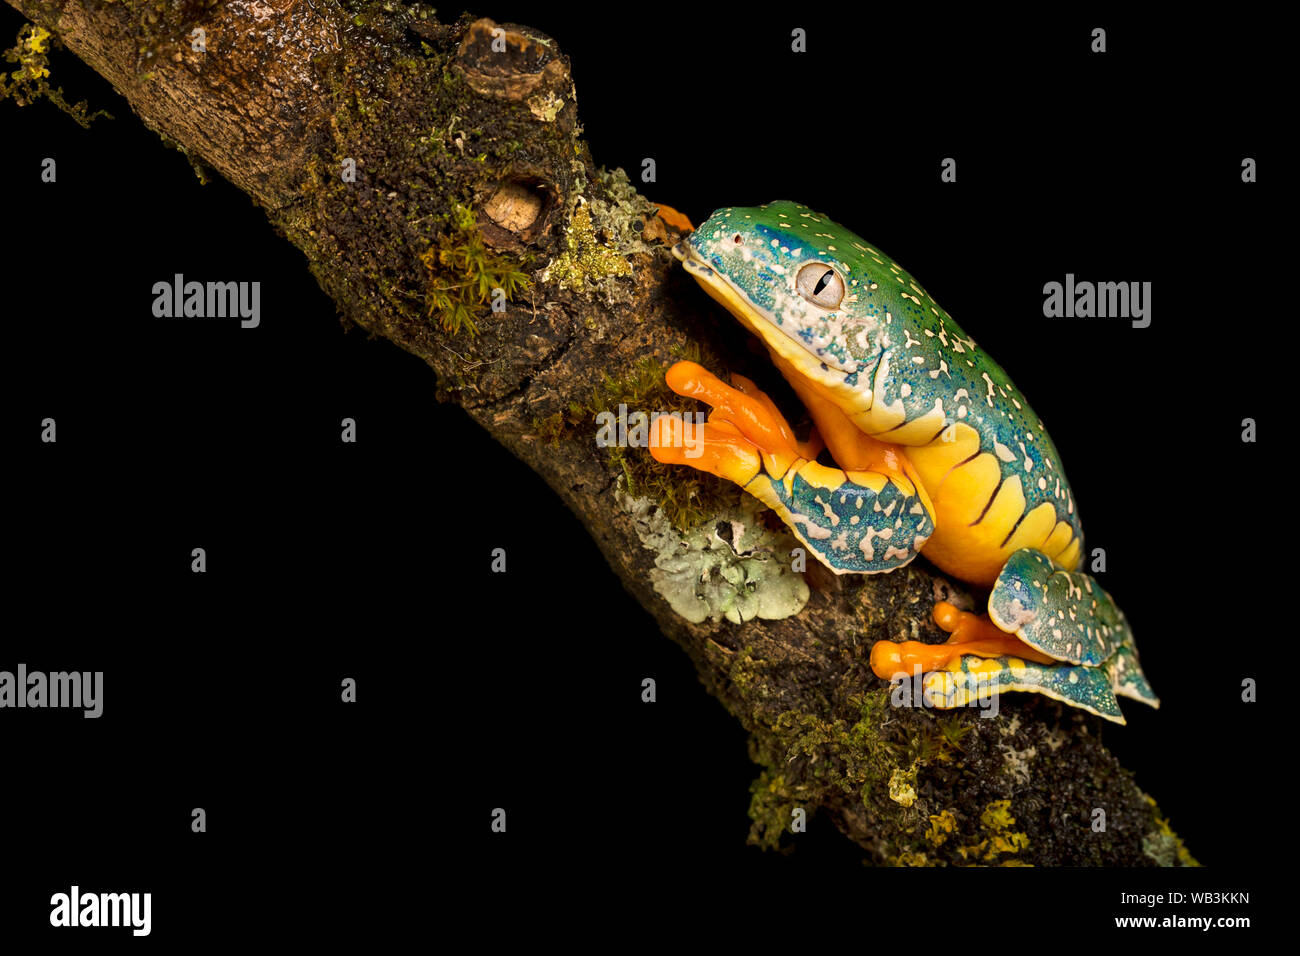 Fringed leaf frog Stock Photo